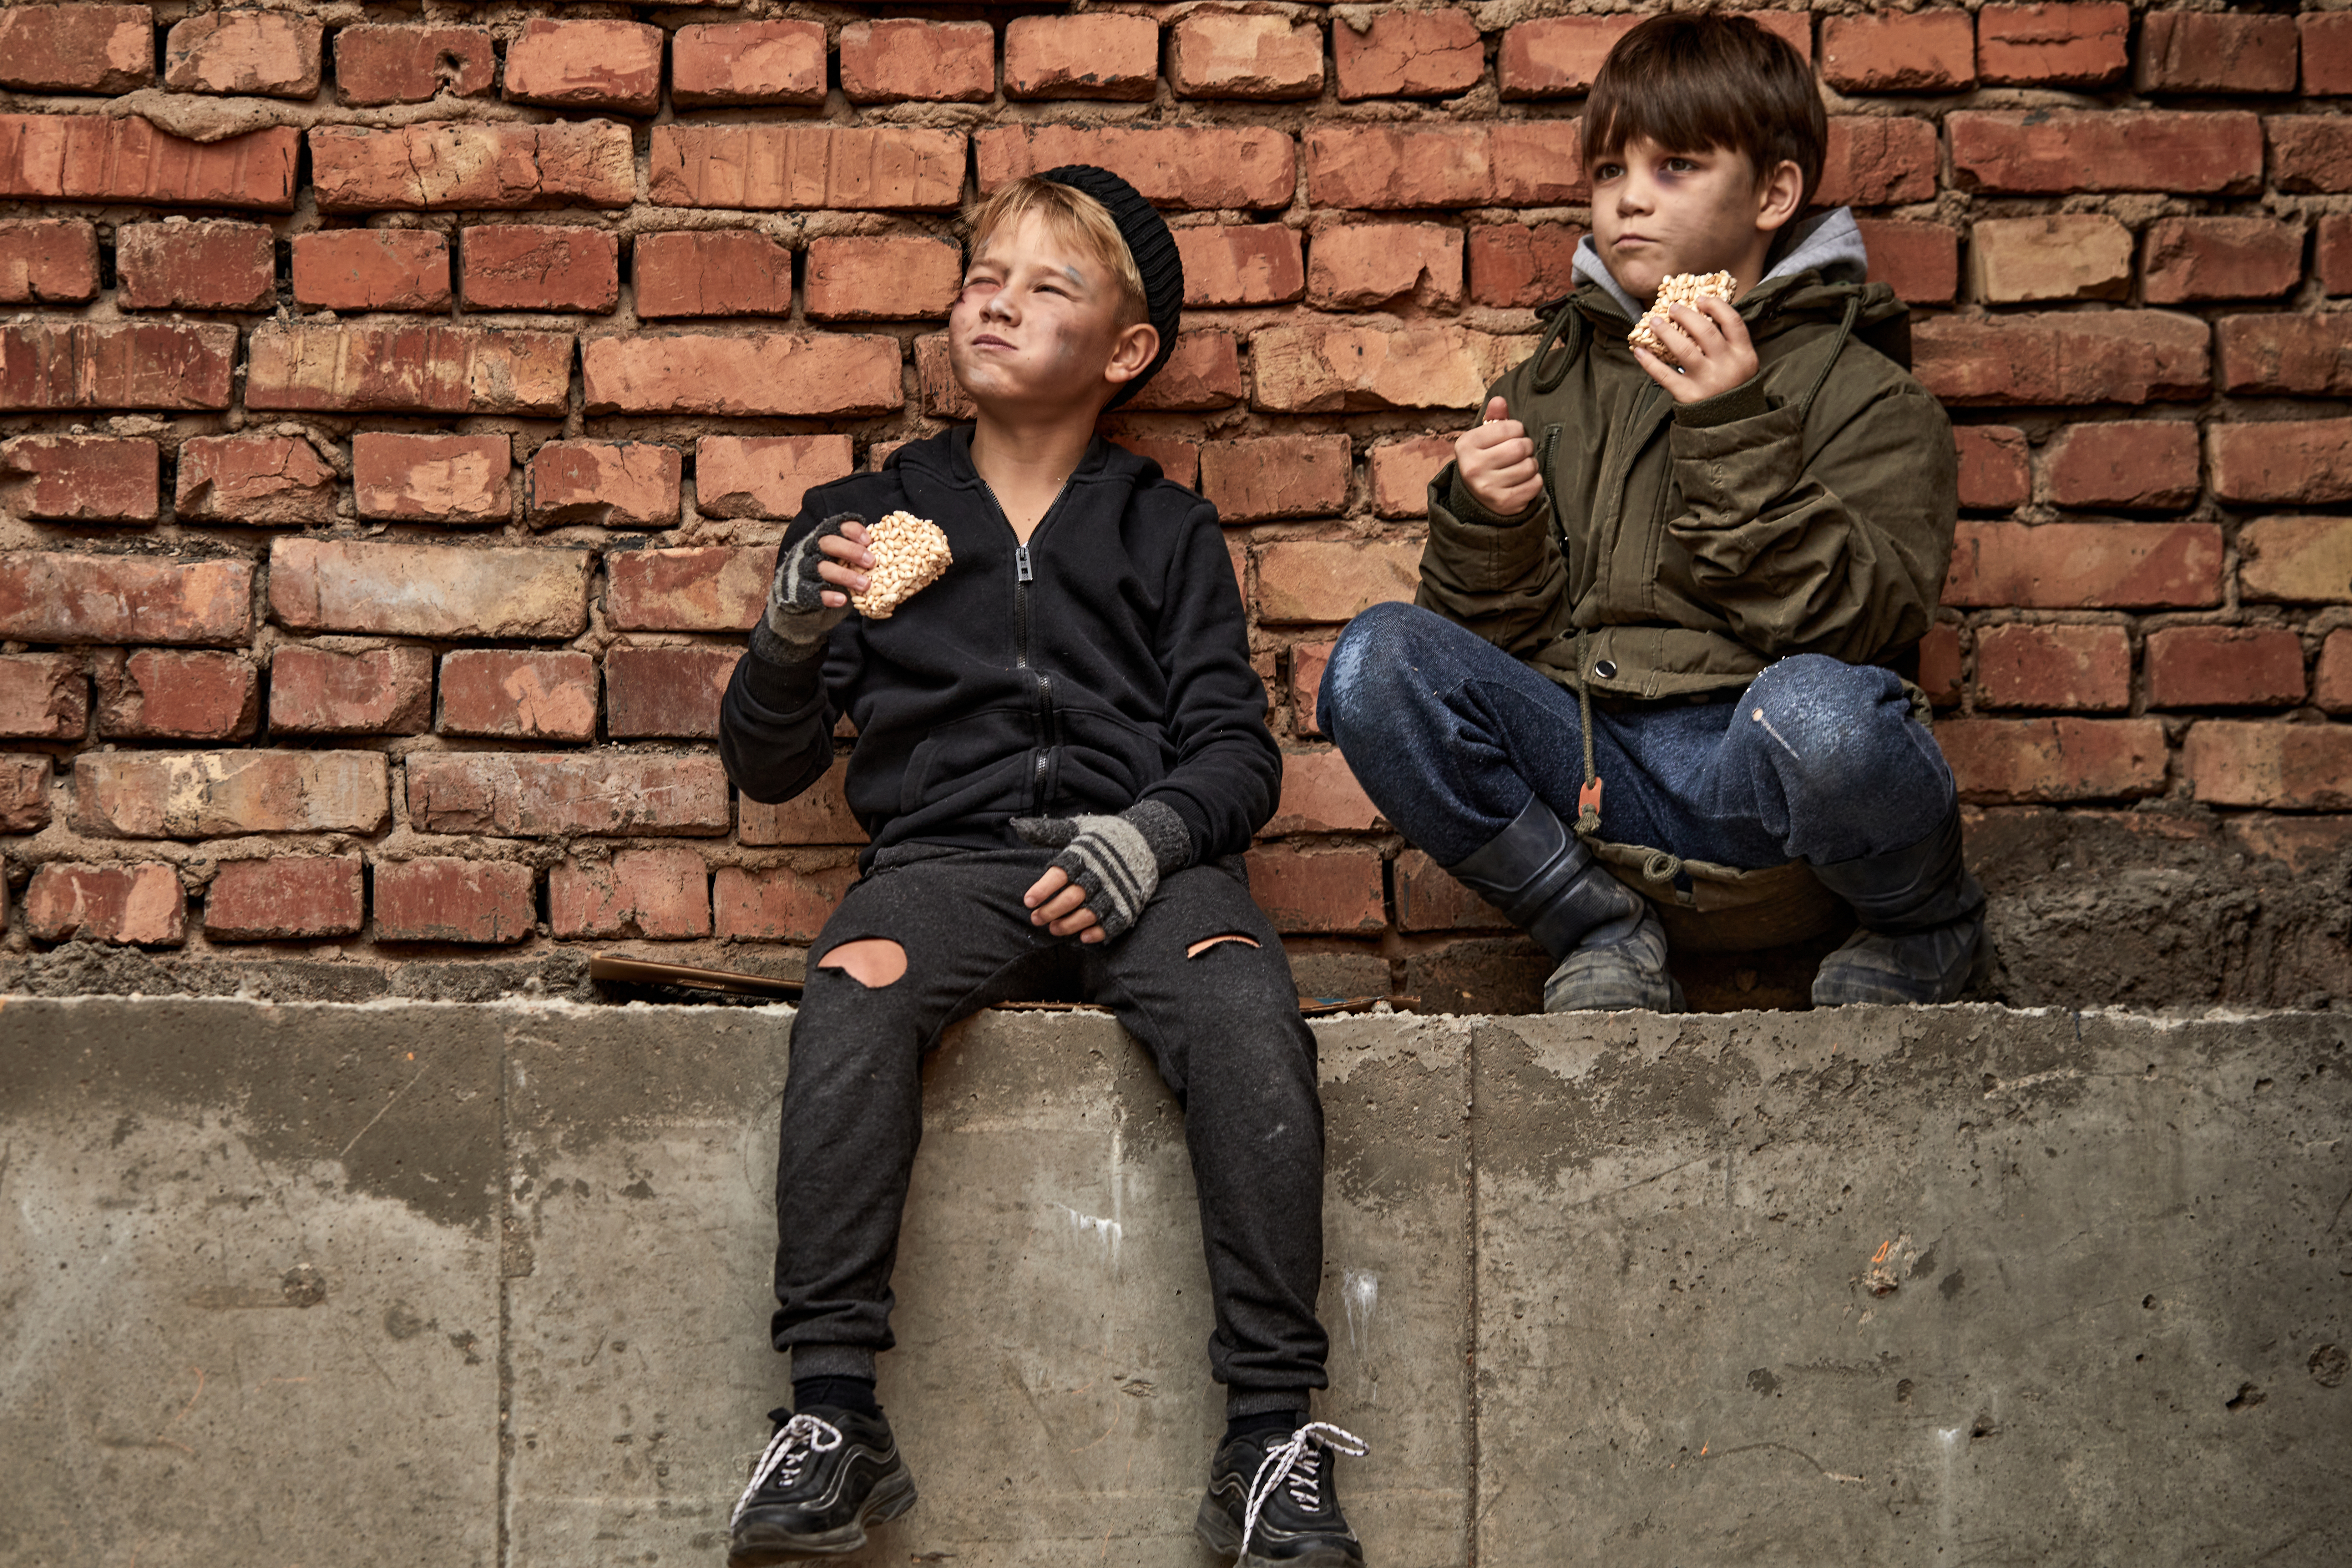 Poor street kids enjoy meal | Source: Shutterstock.com